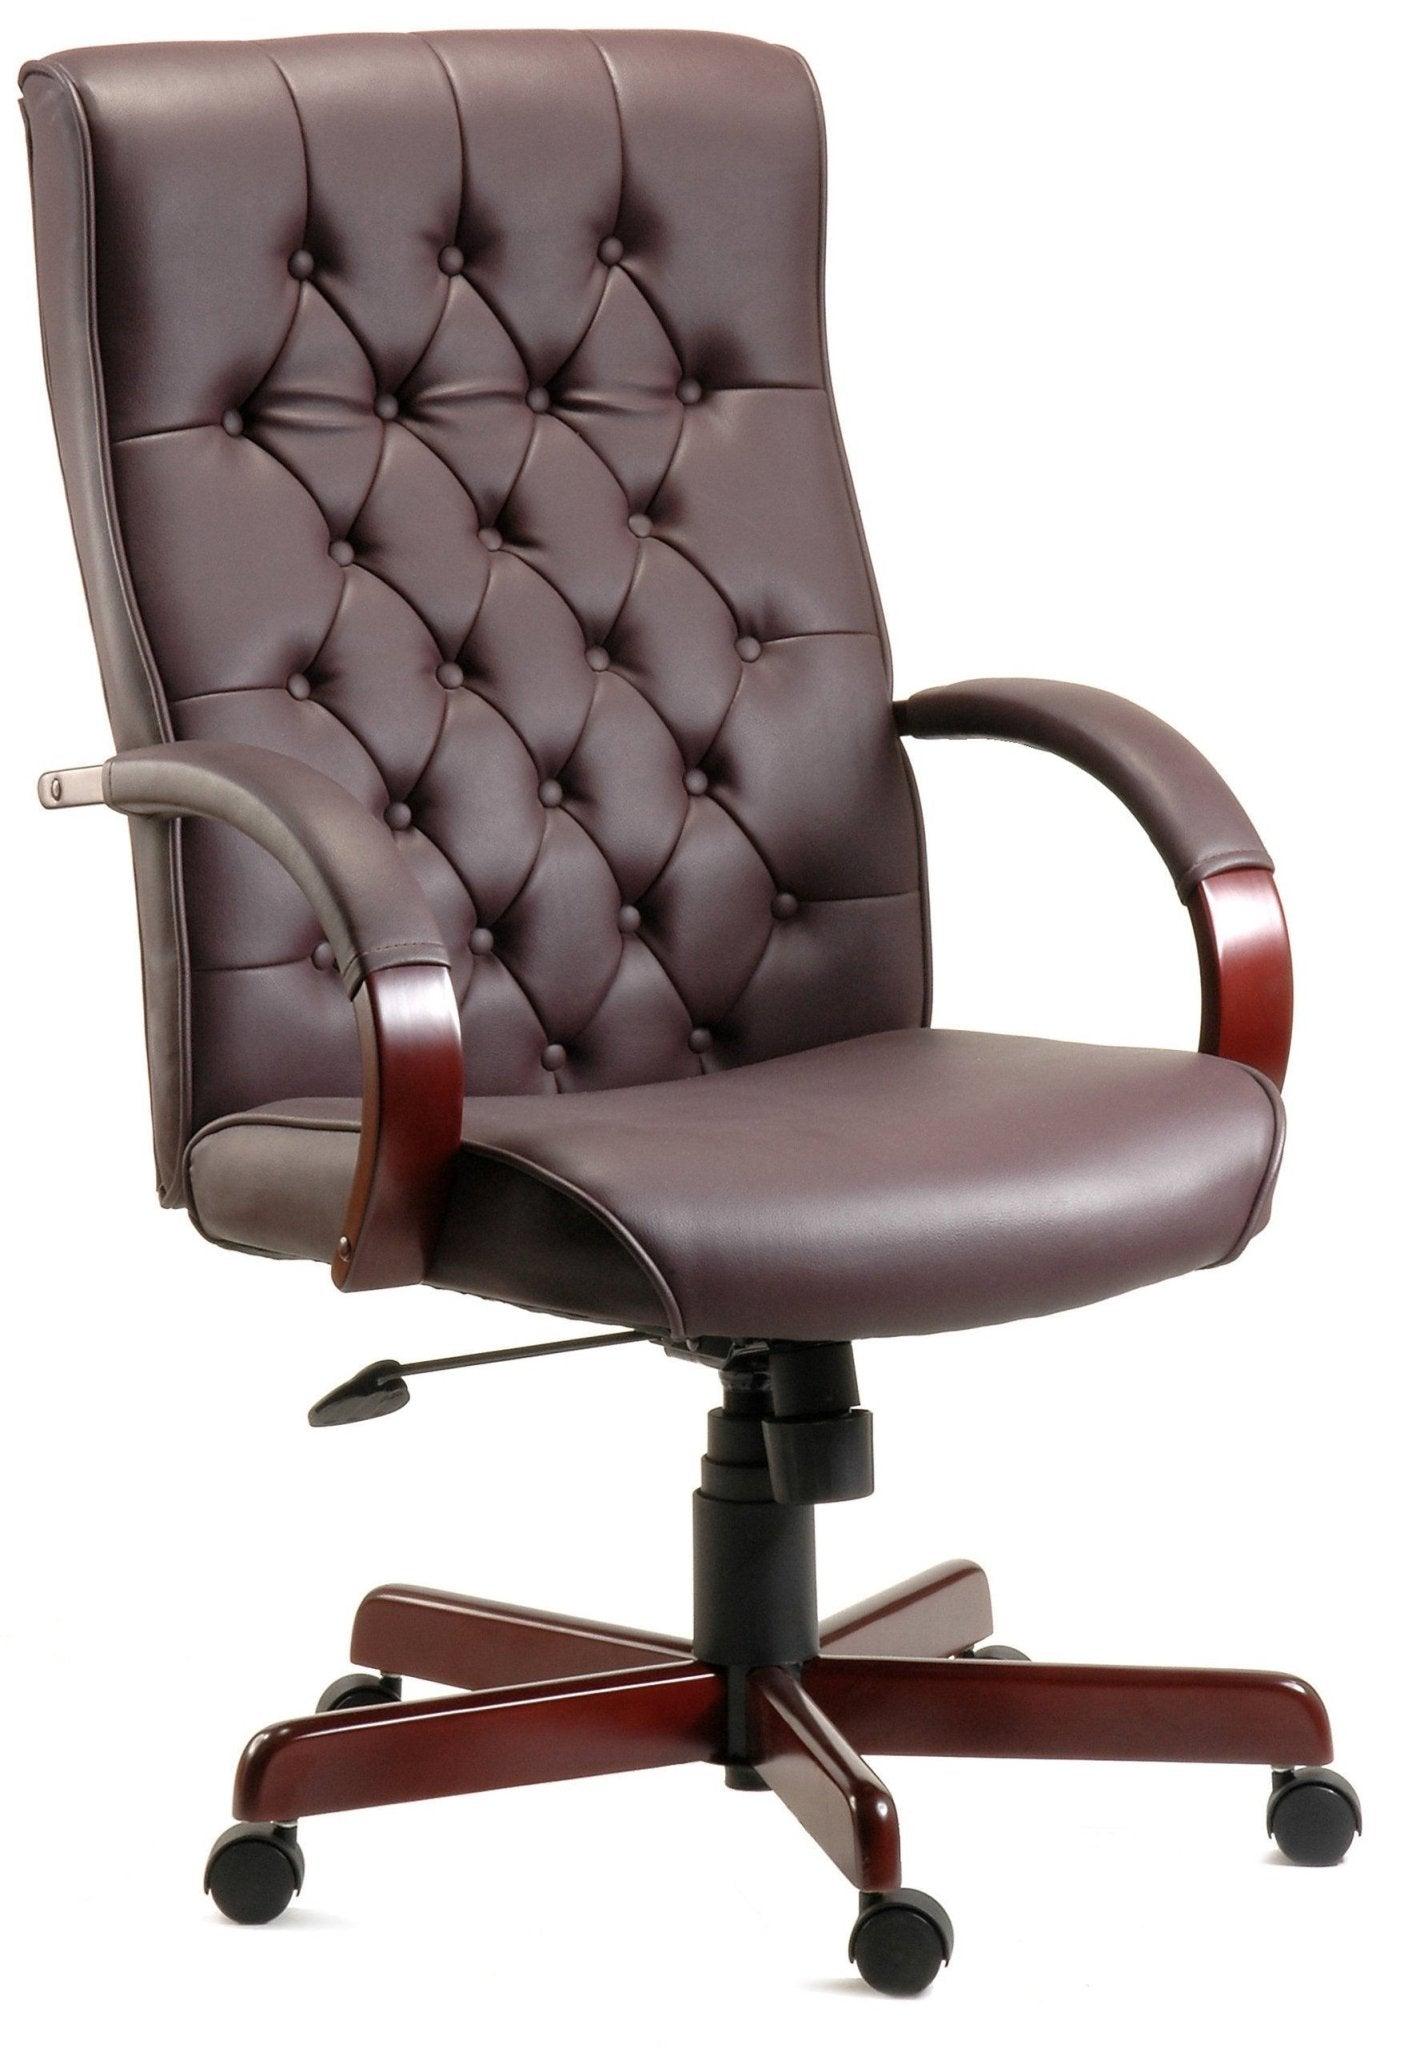 Warwick office chair (burgundy) - crimblefest furniture - image 1